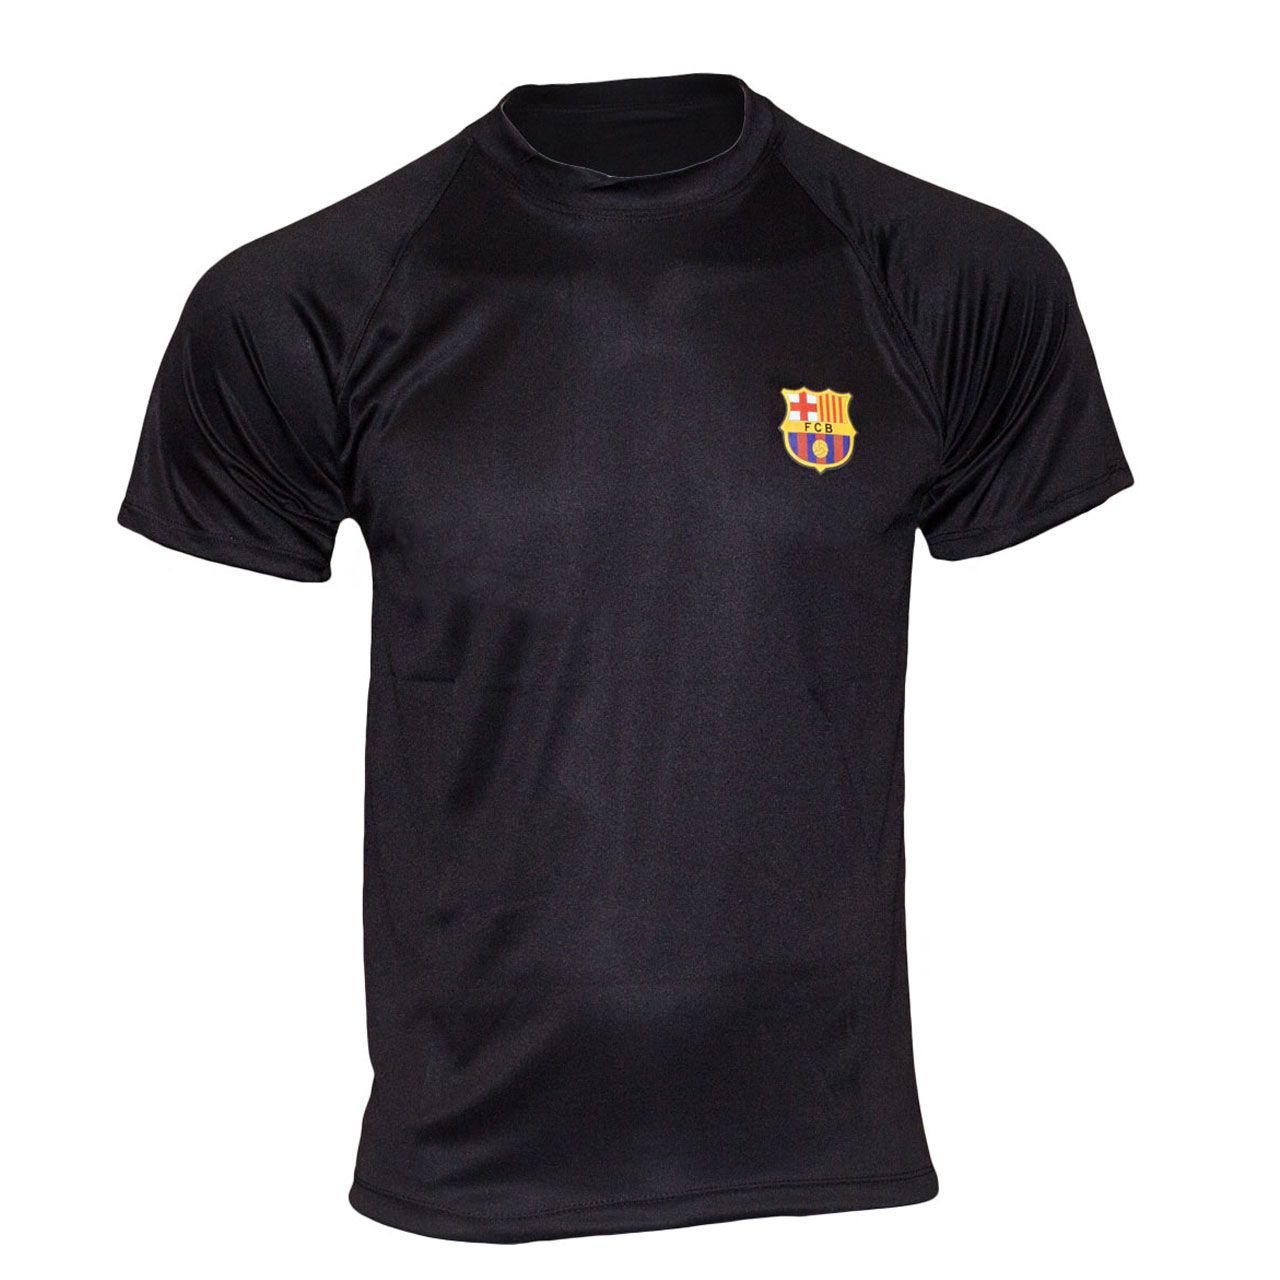 تیشرت ورزشی پسرانه طرح بارسلونا کد A04 -  - 1